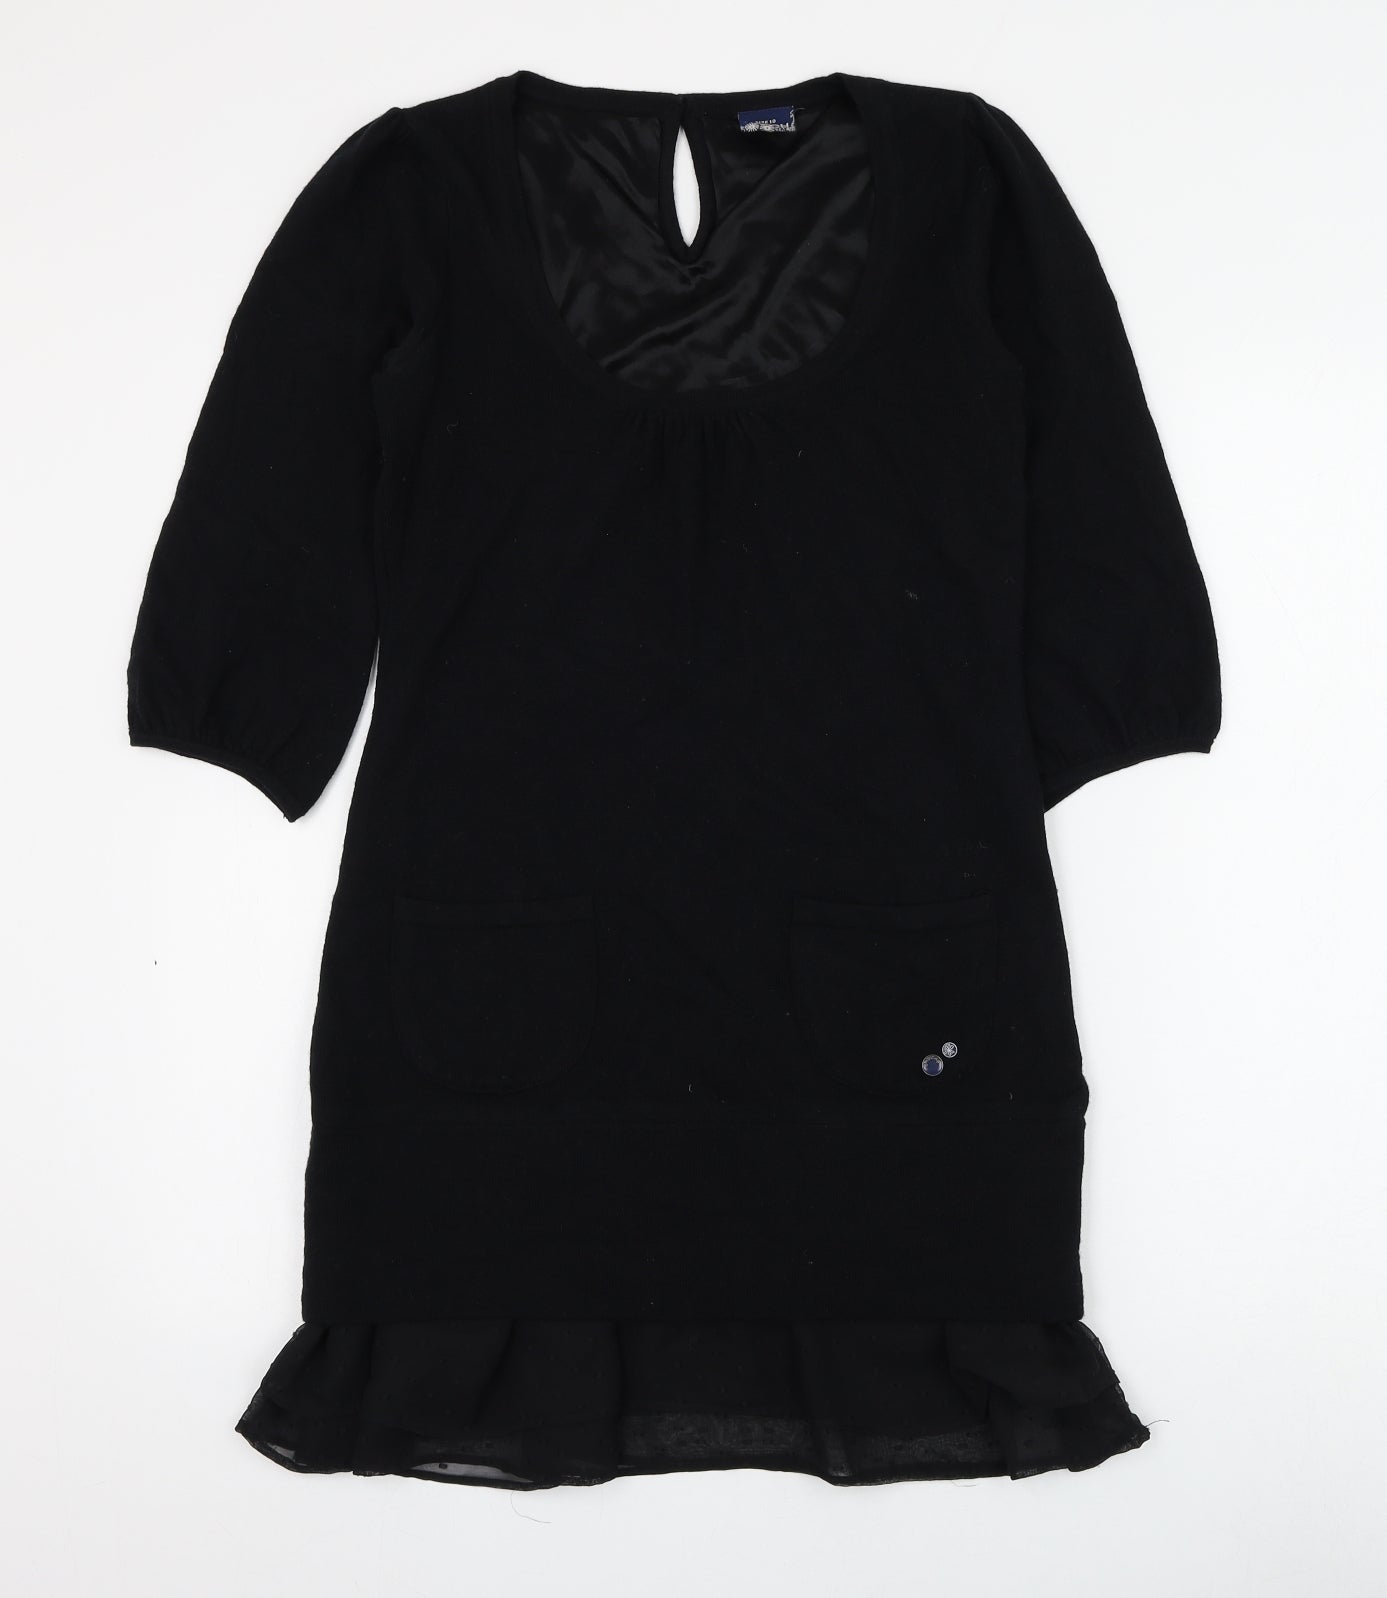 HOOCH Womens Black Wool Jumper Dress Size 10 Scoop Neck Pullover